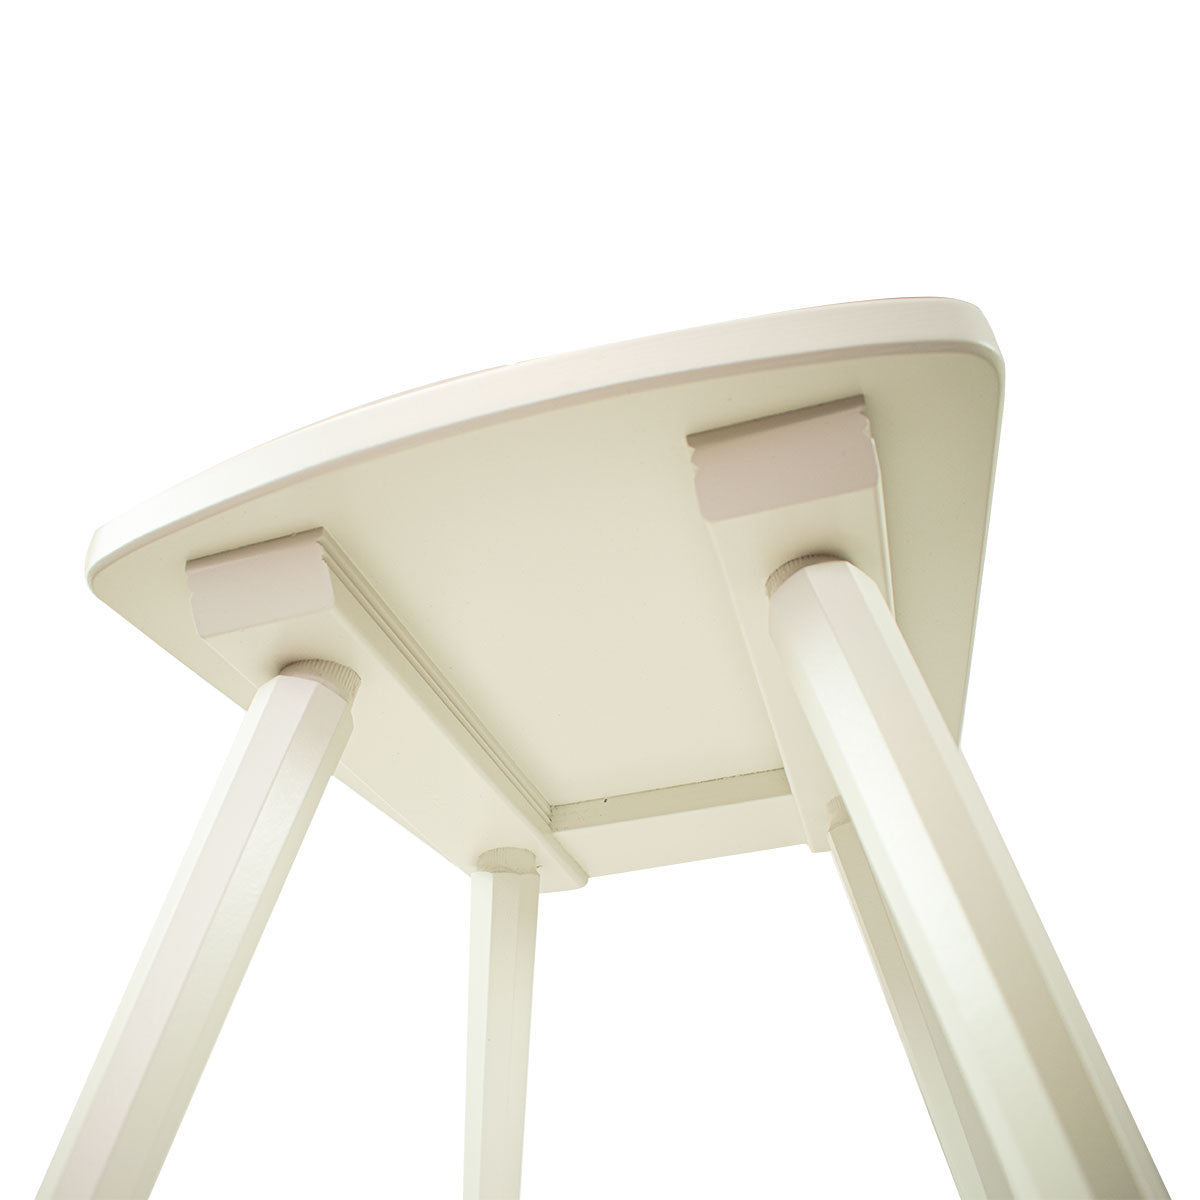 Eleganter Stuhl  'Black or White' | Vollholz | deckend lackiert | Griff rechteckig | in Schwarz oder Weiß erhältlich